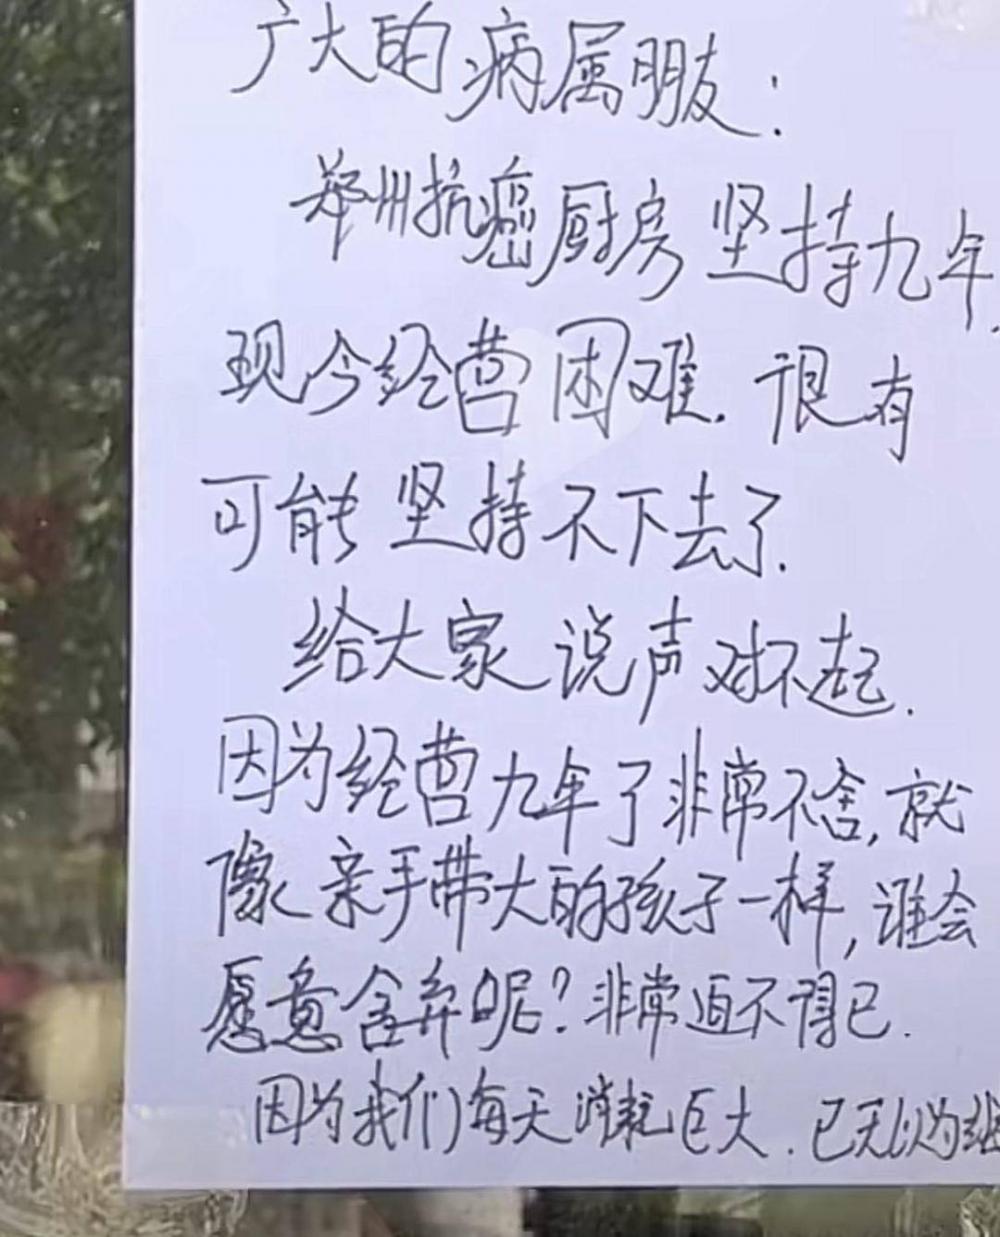 郑州抗癌共享厨房被质疑利用慈善赚钱：多名网友起底哭穷史，创始人妻子晒宝马